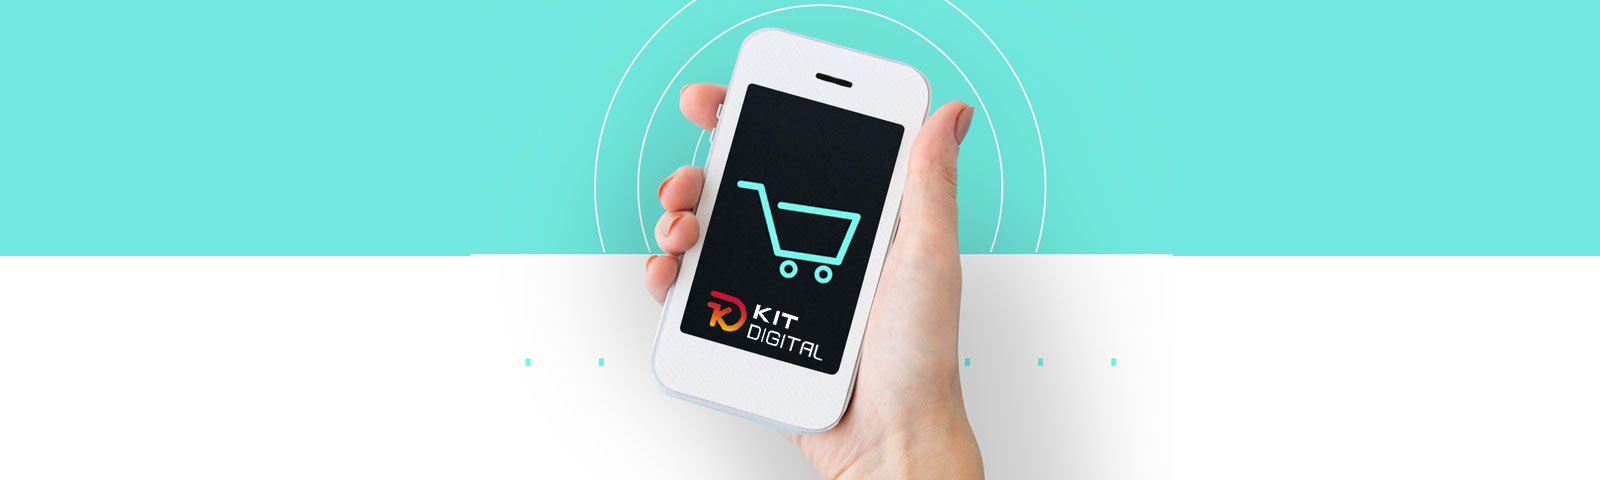 Kit Digital, creación de una Tienda online con PrestaShop "Todo incluido": La Excelencia en el Comercio Electrónico